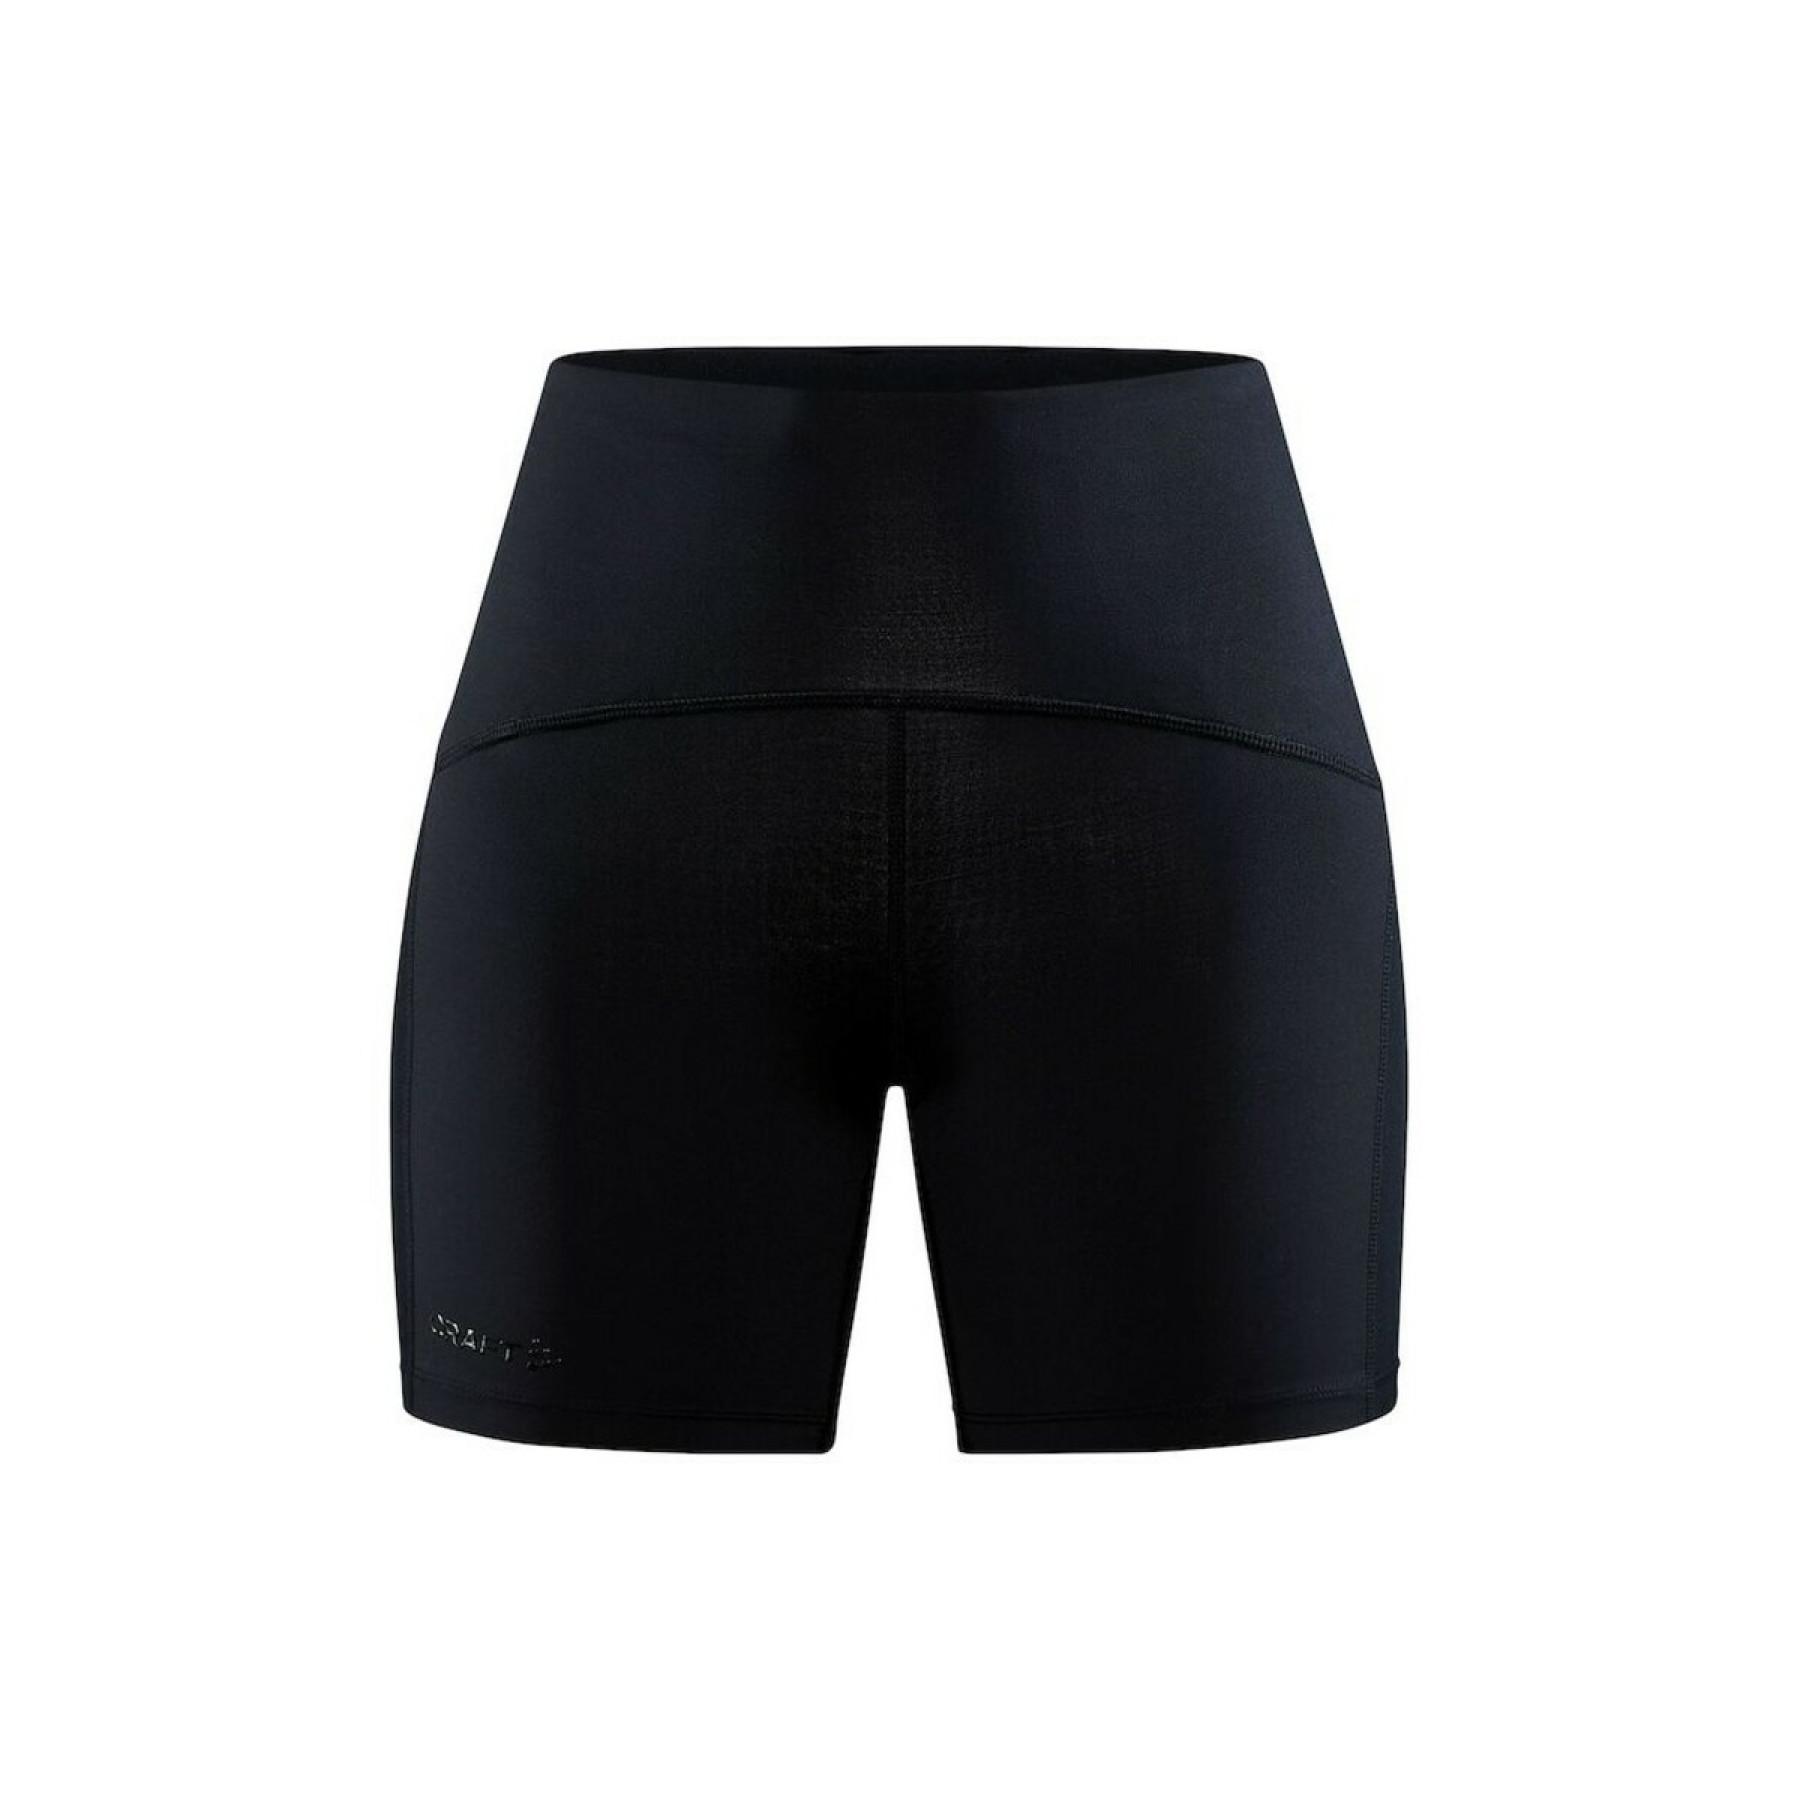 Pantalones cortos de compresión para mujer Craft pro hypervent